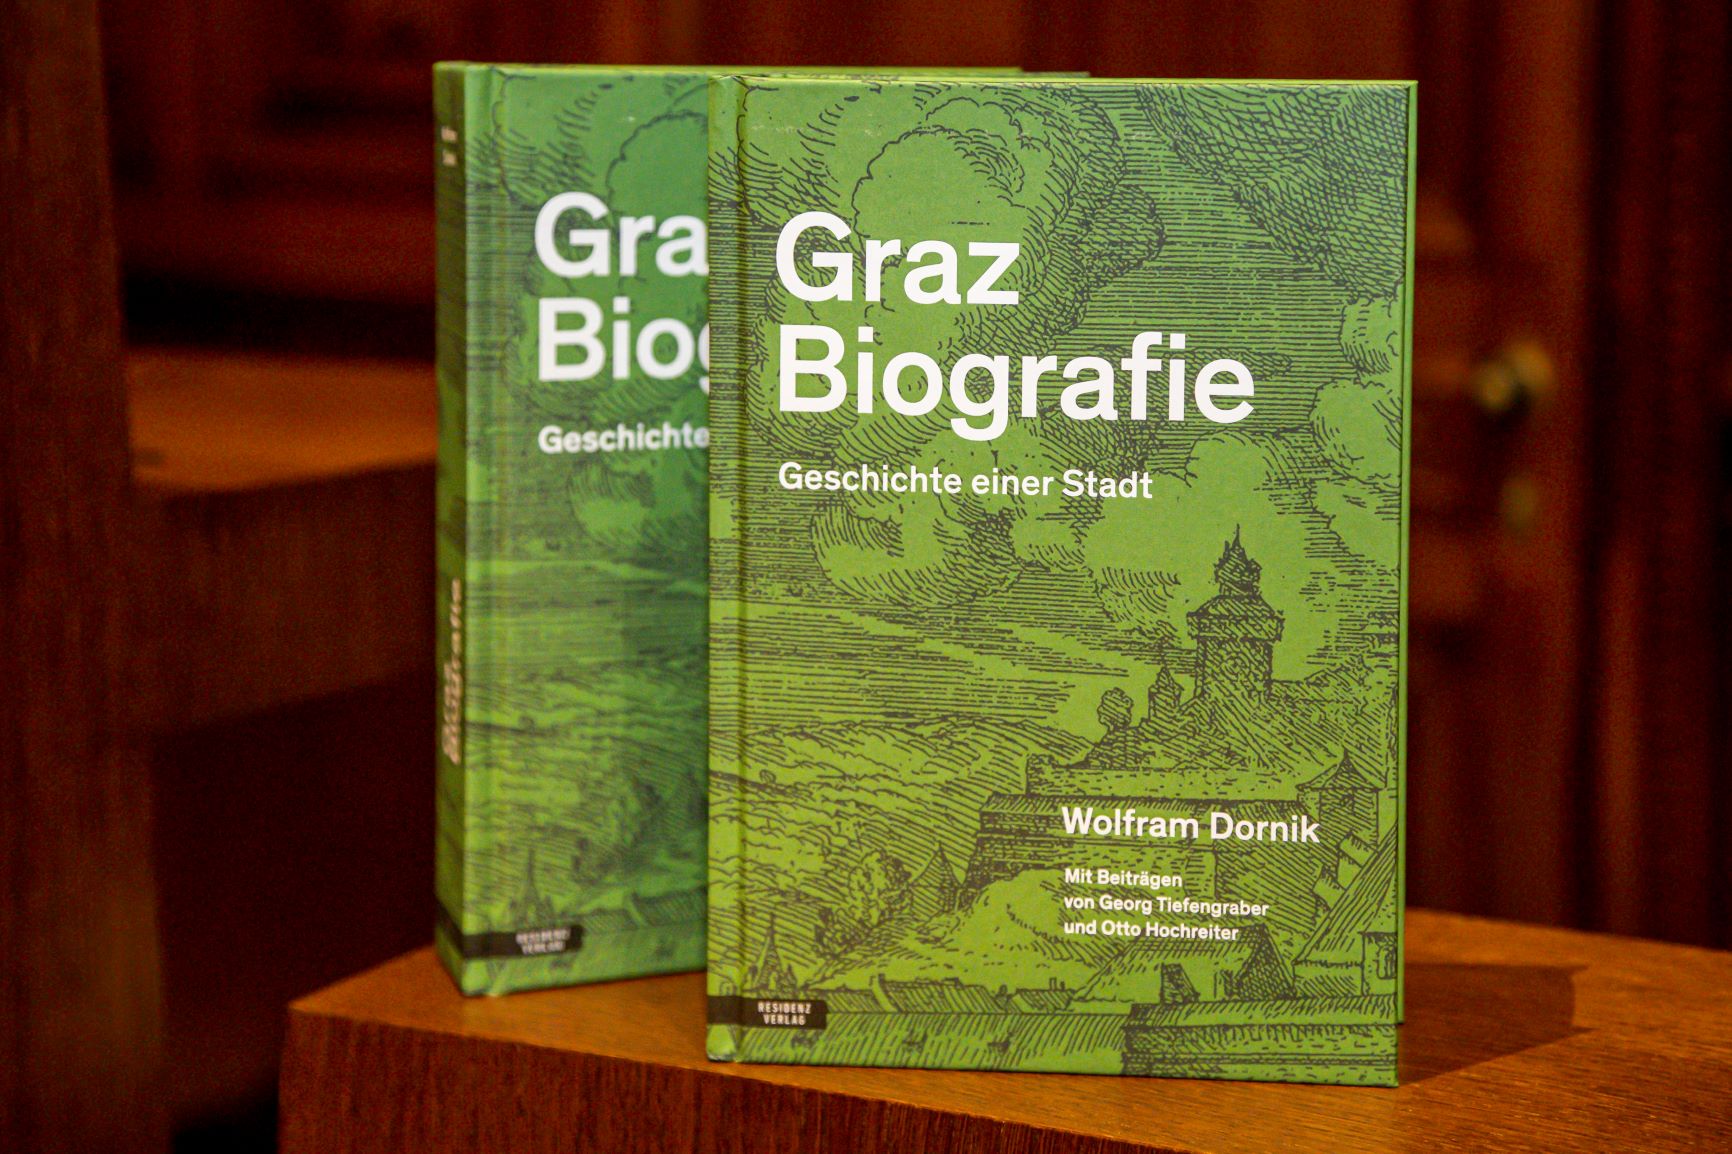 Auf einem dunkelbraunen Holzpult sind zwei exemplare de Buches Graz Biografie nebeneinander aufgestellt.